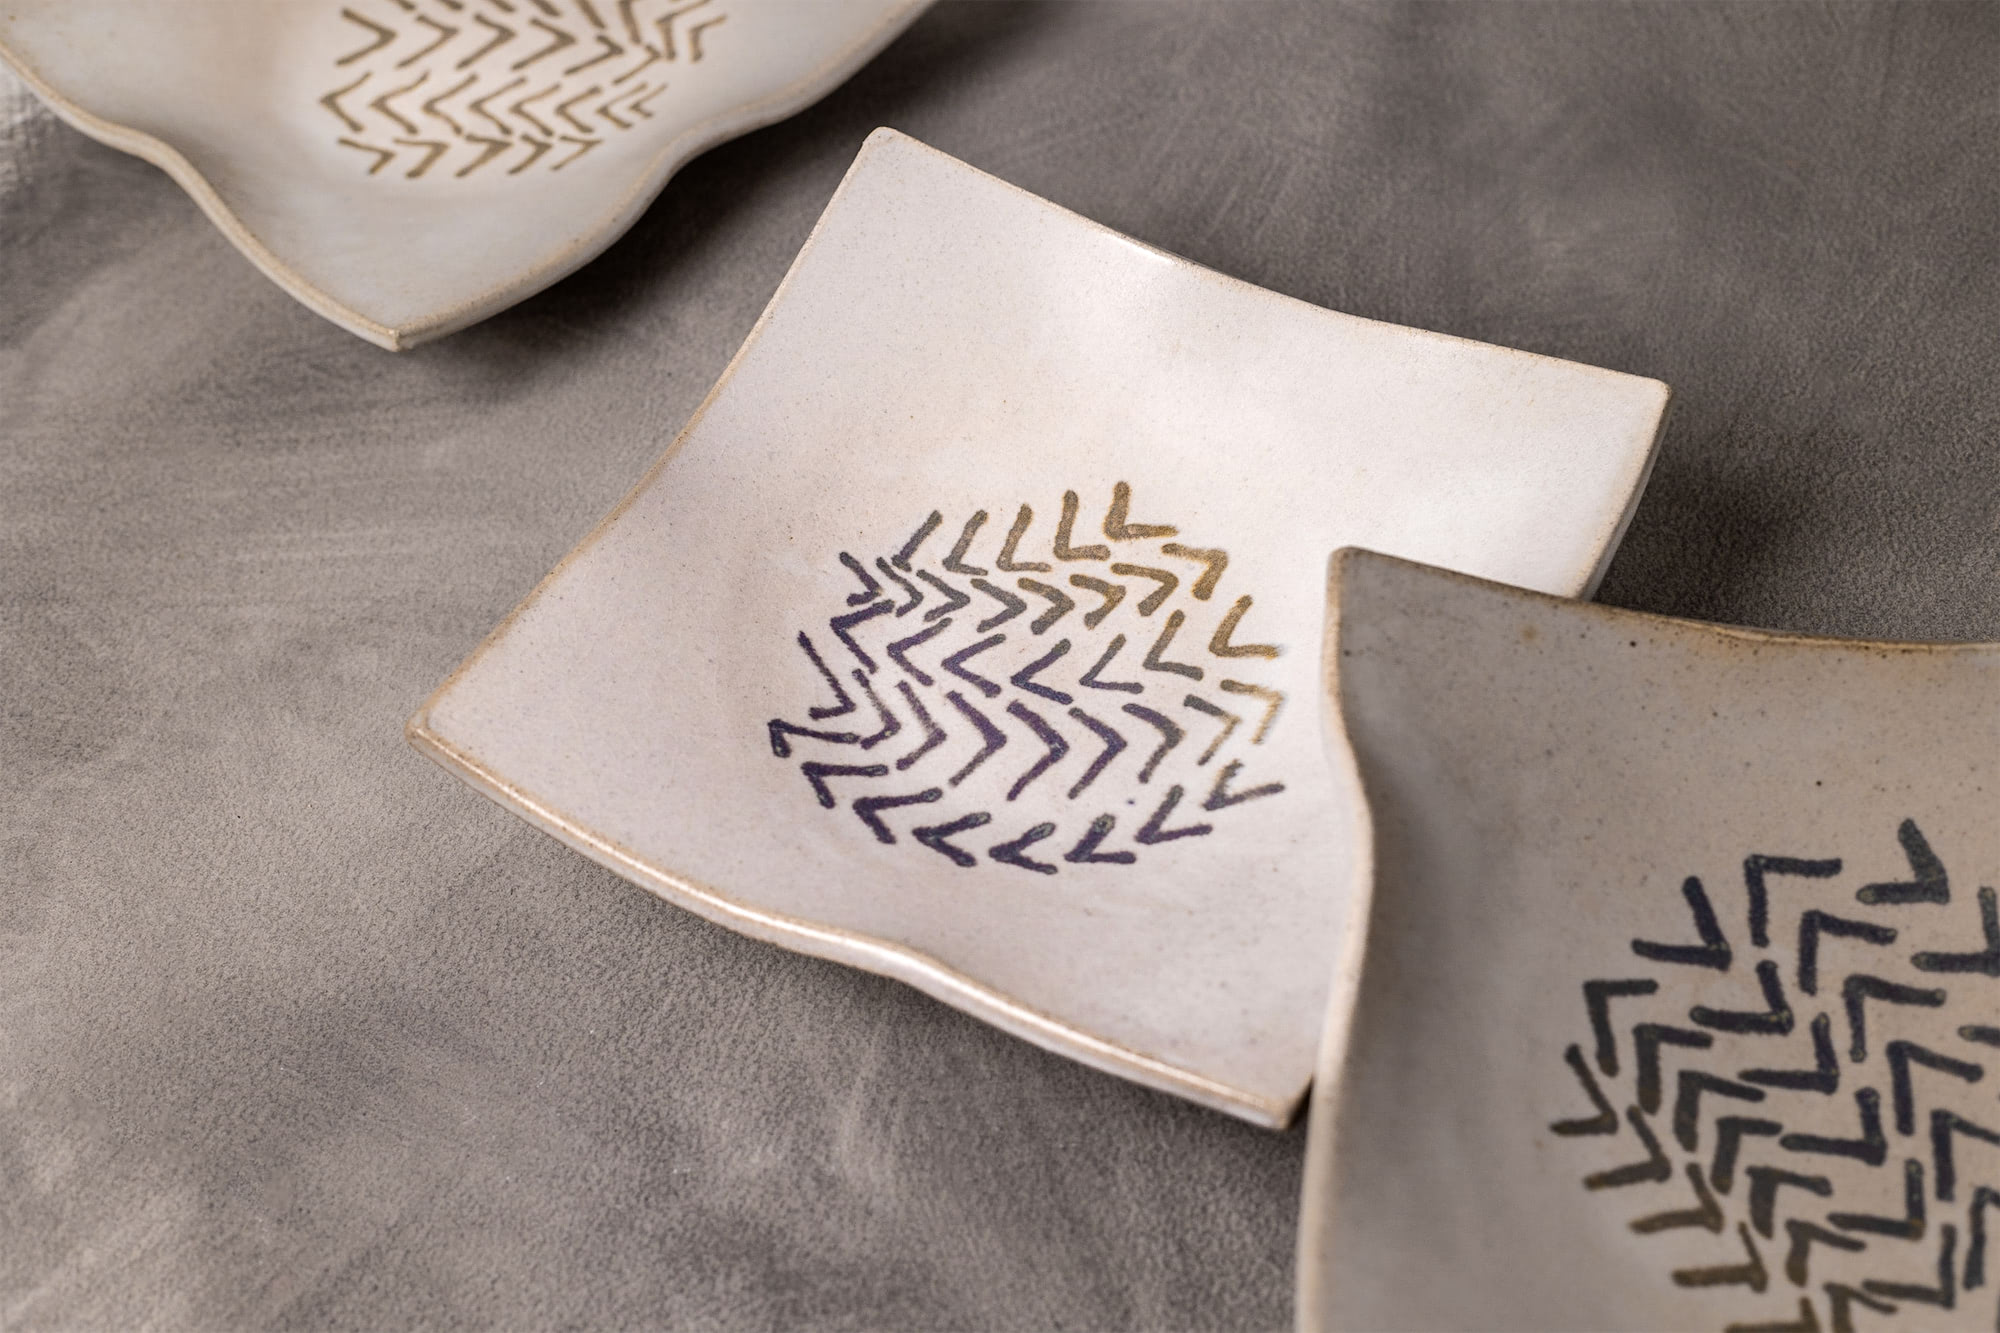 Pieza de cerámica de la vajilla diseñada para el proyecto.